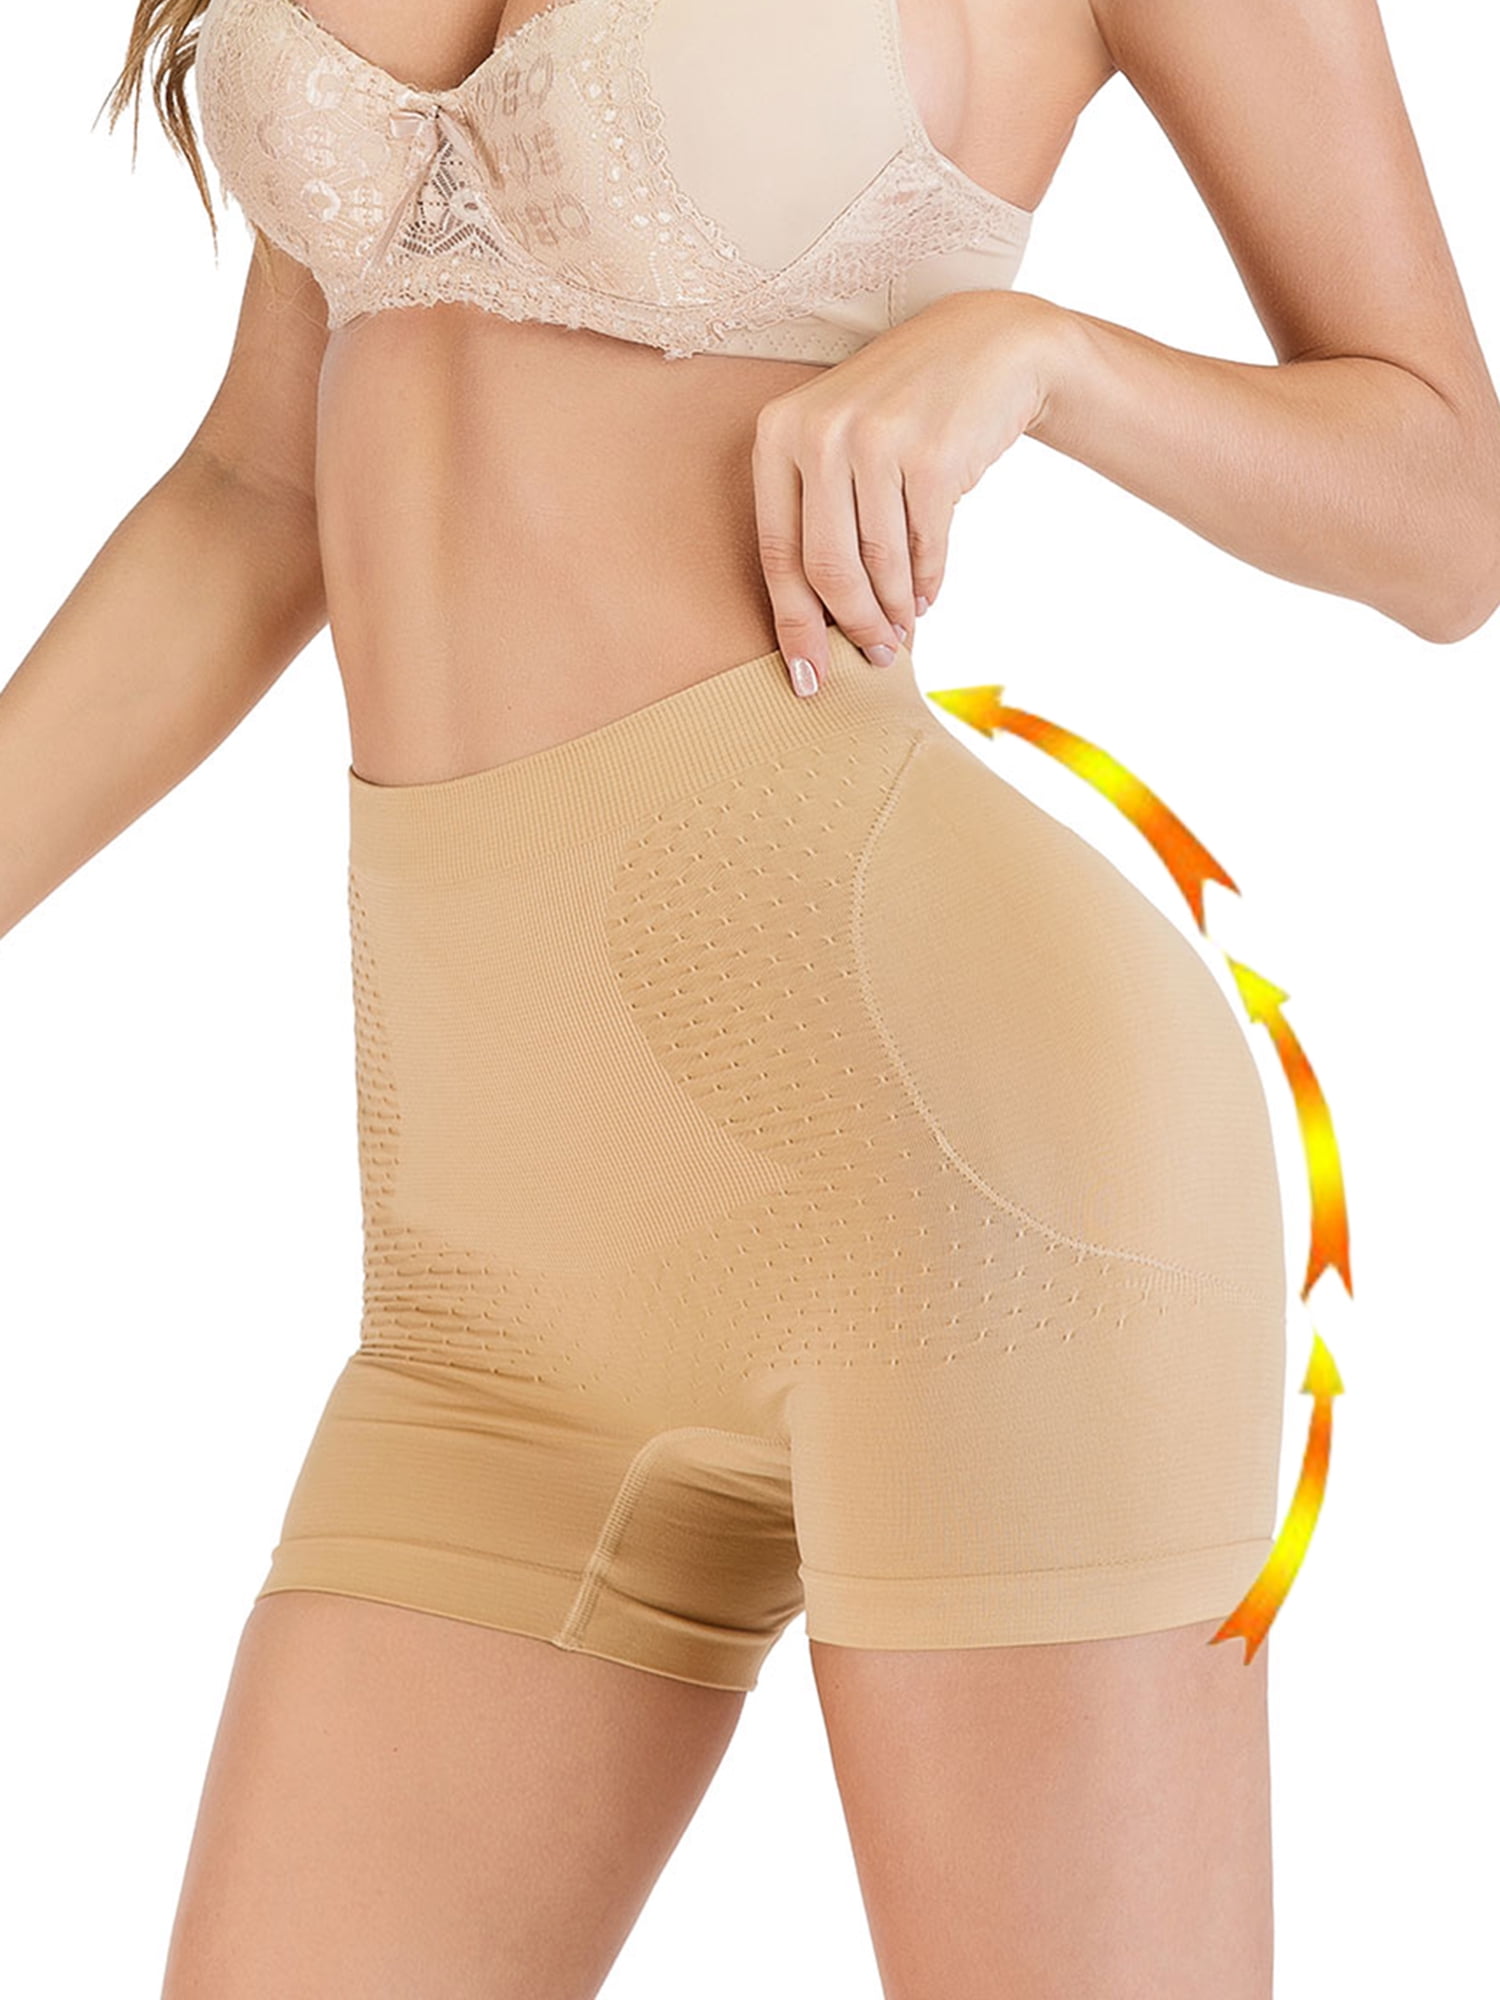 Butt Lifter Padded Hip Enhancer Pant High Waist Thigh Slimmer Control Panties BT